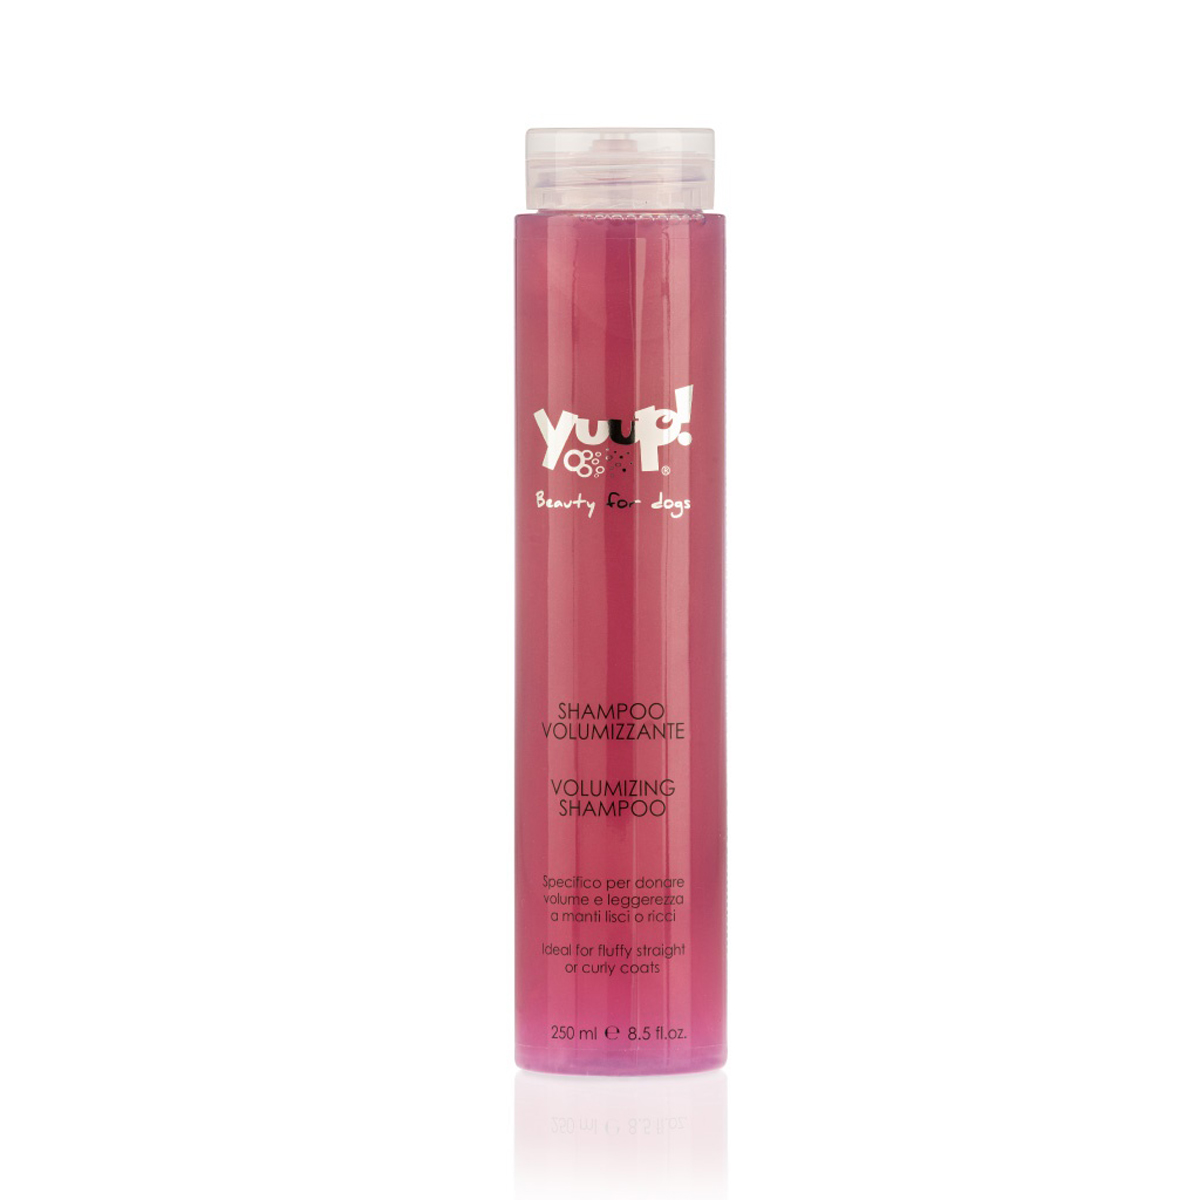 Yuup! Home Shampoo für Volumen "Volumizing Shampoo"